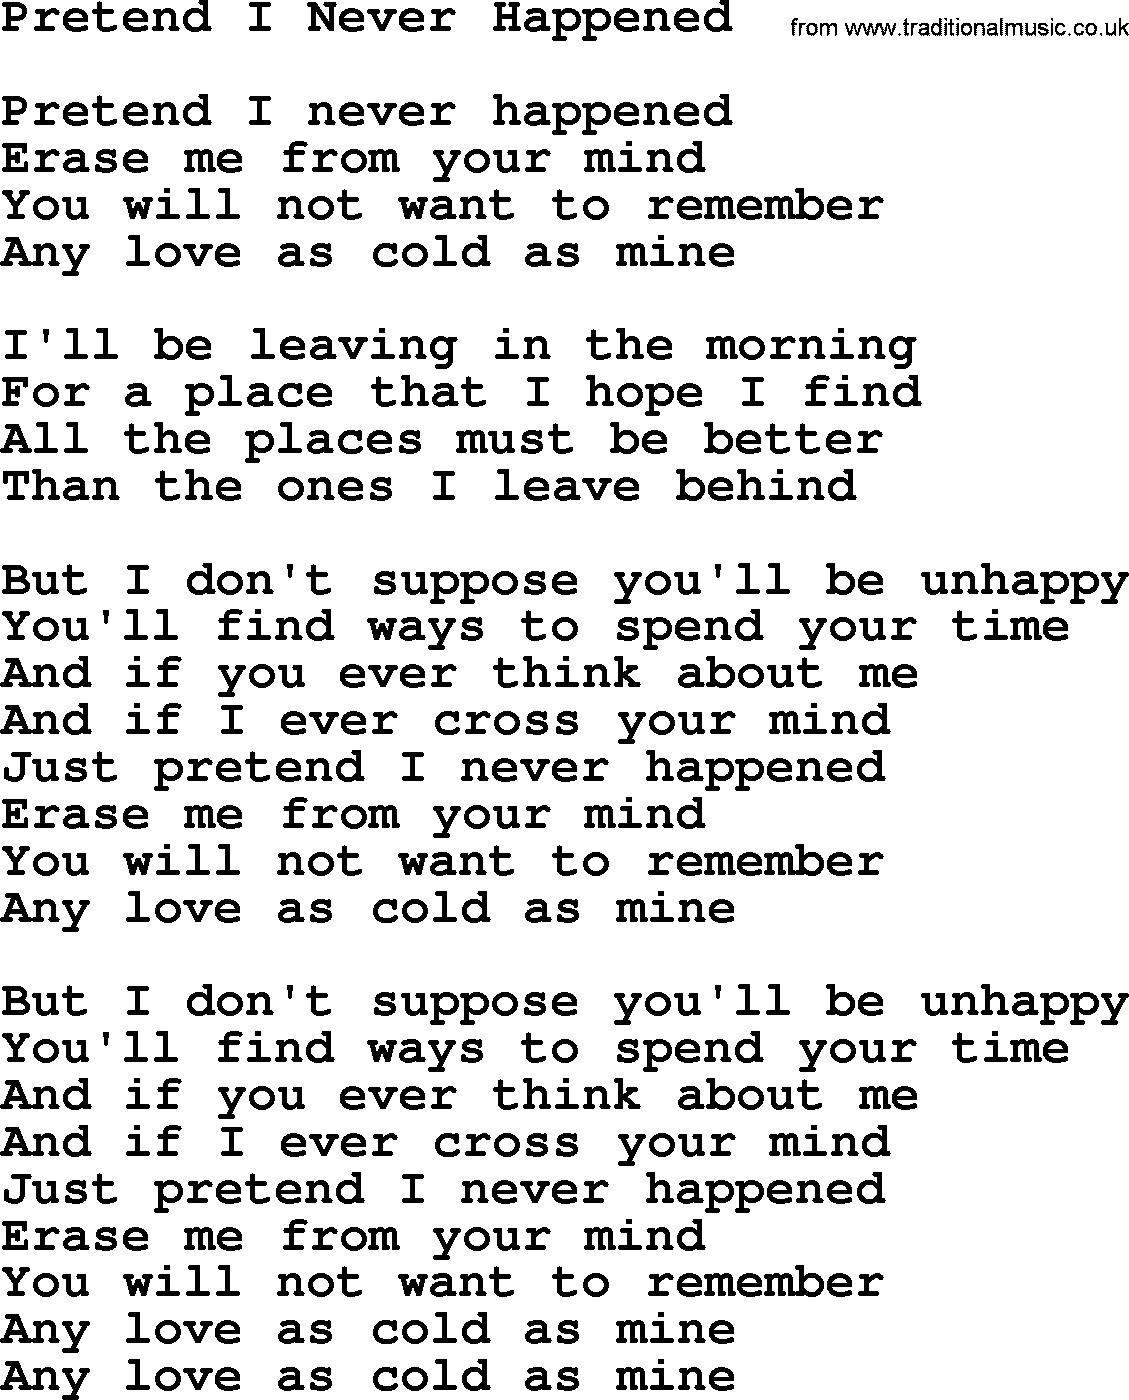 Willie Nelson song: Pretend I Never Happened lyrics